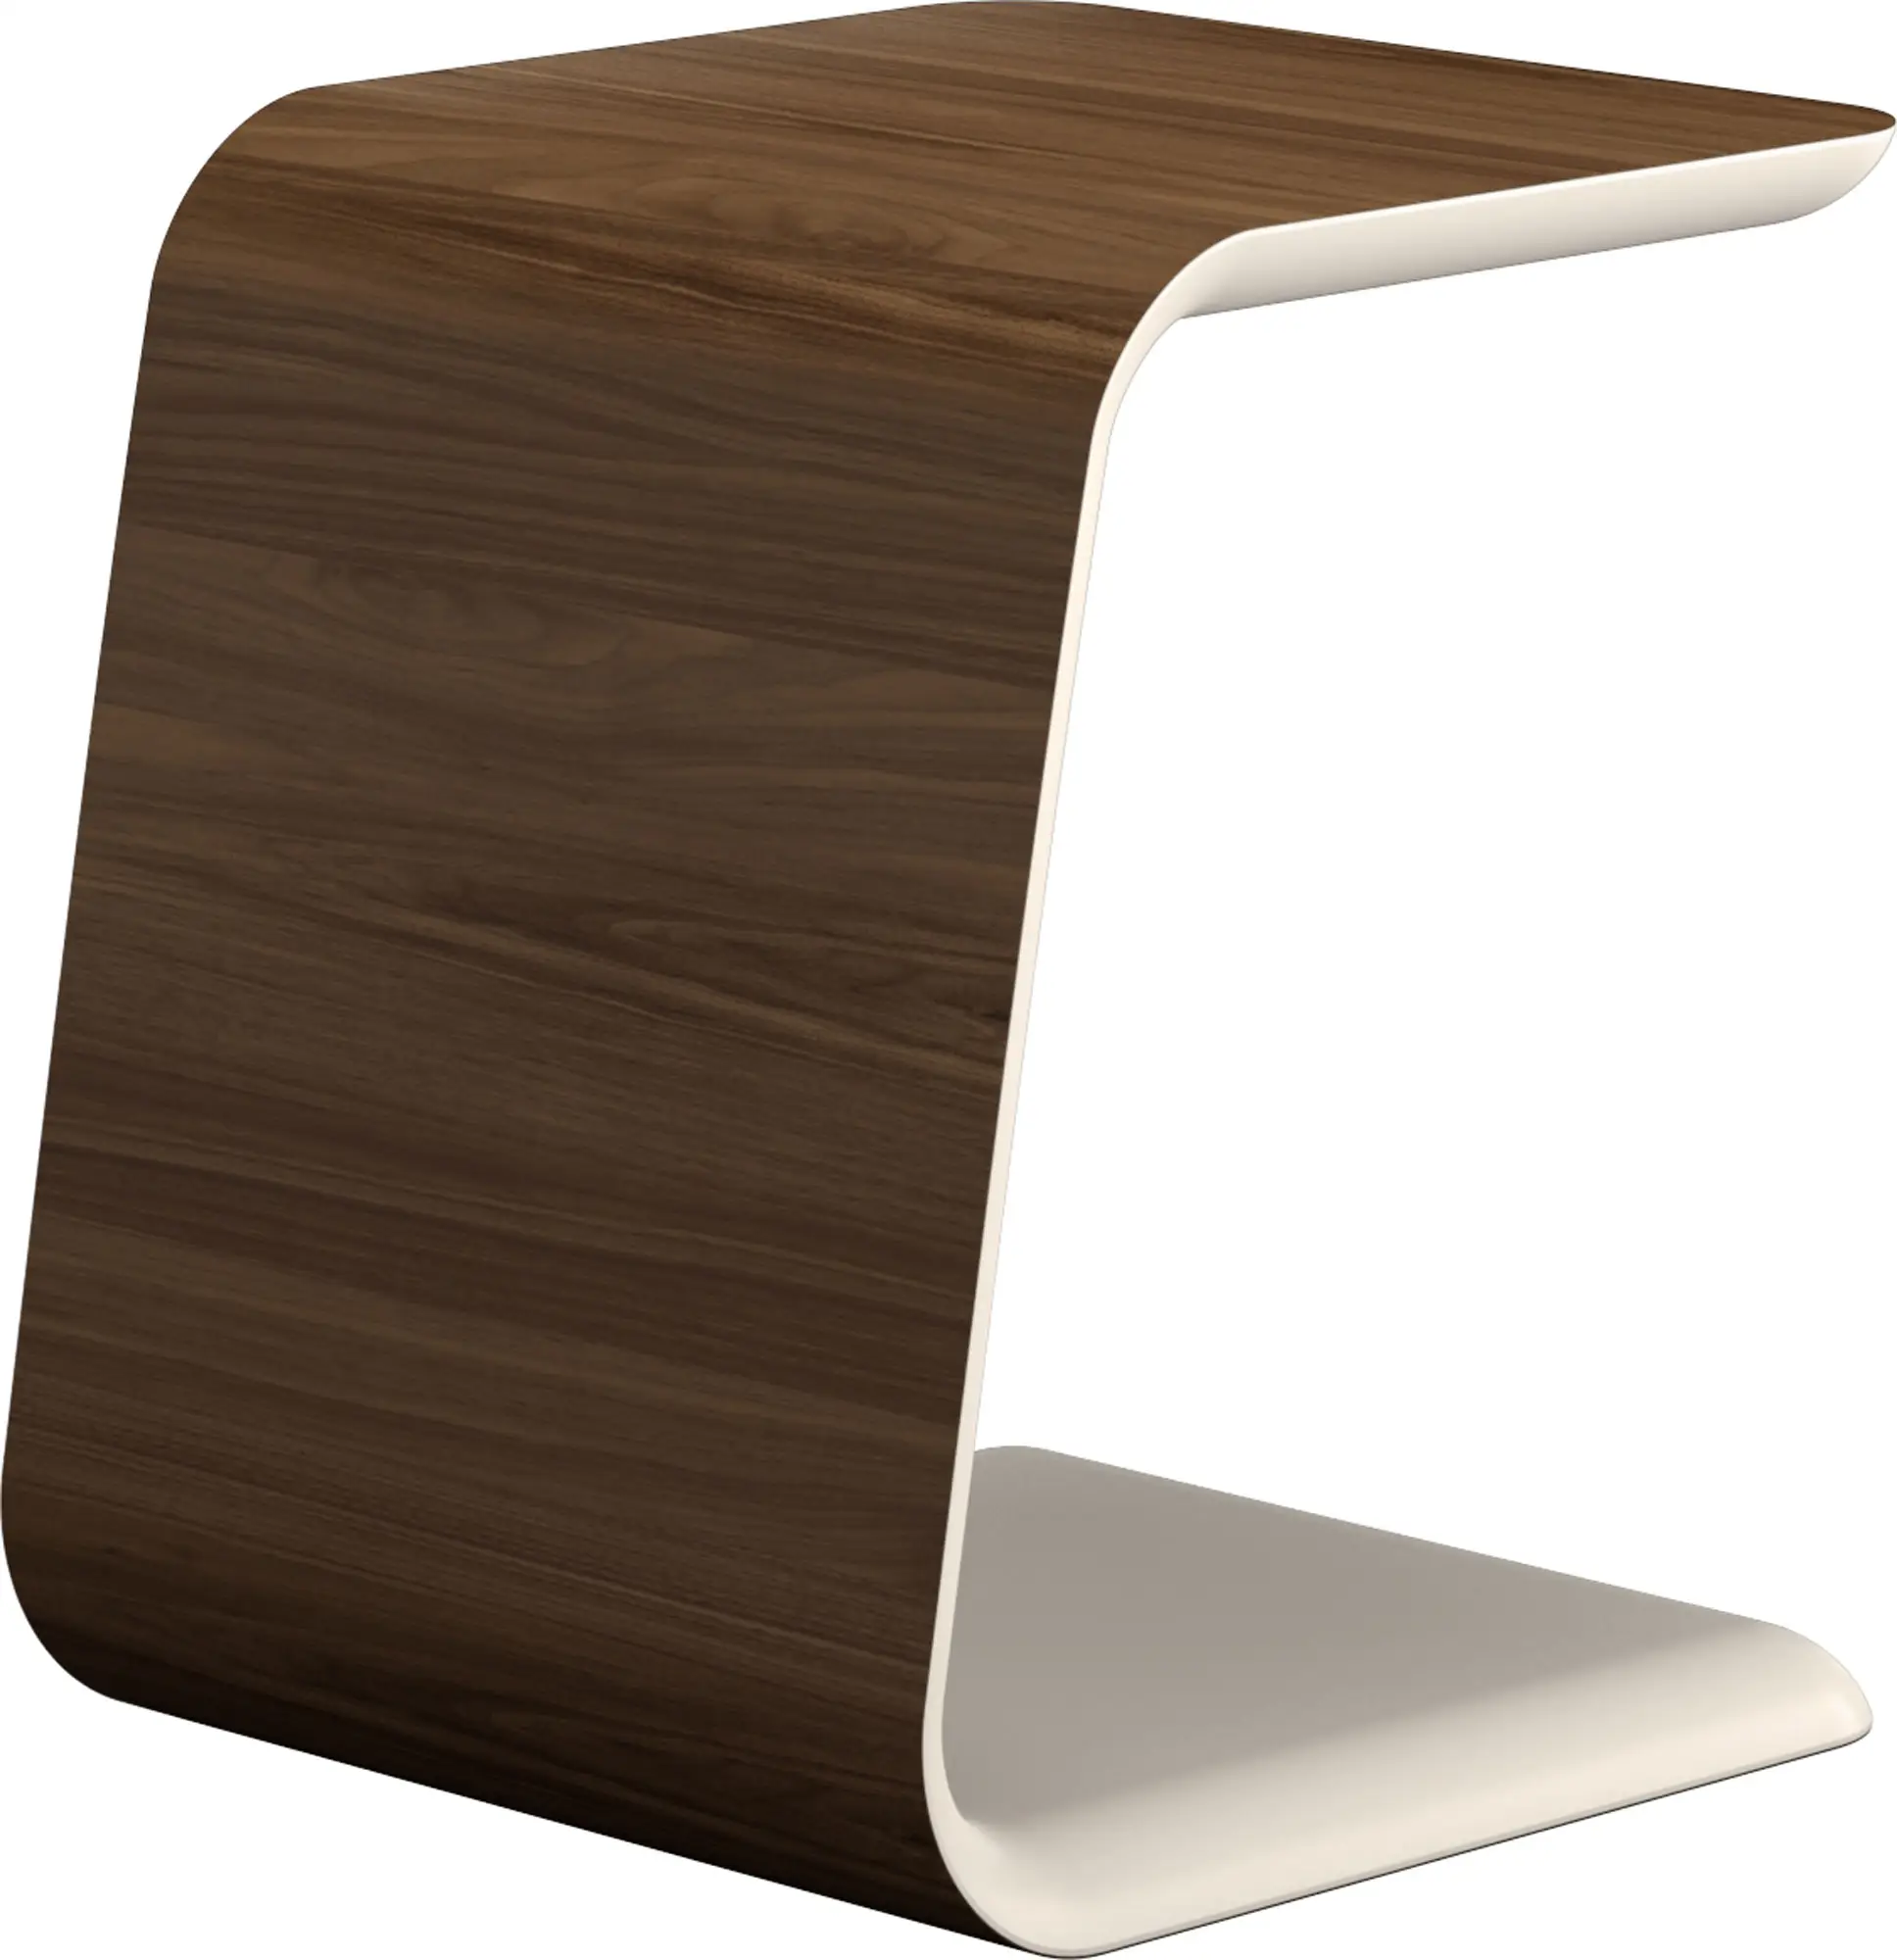 Desain Modern Meja Samping Furnitur Ruang Tamu Meja Samping Kayu Lapis untuk Sofa Ukuran Disesuaikan Warna